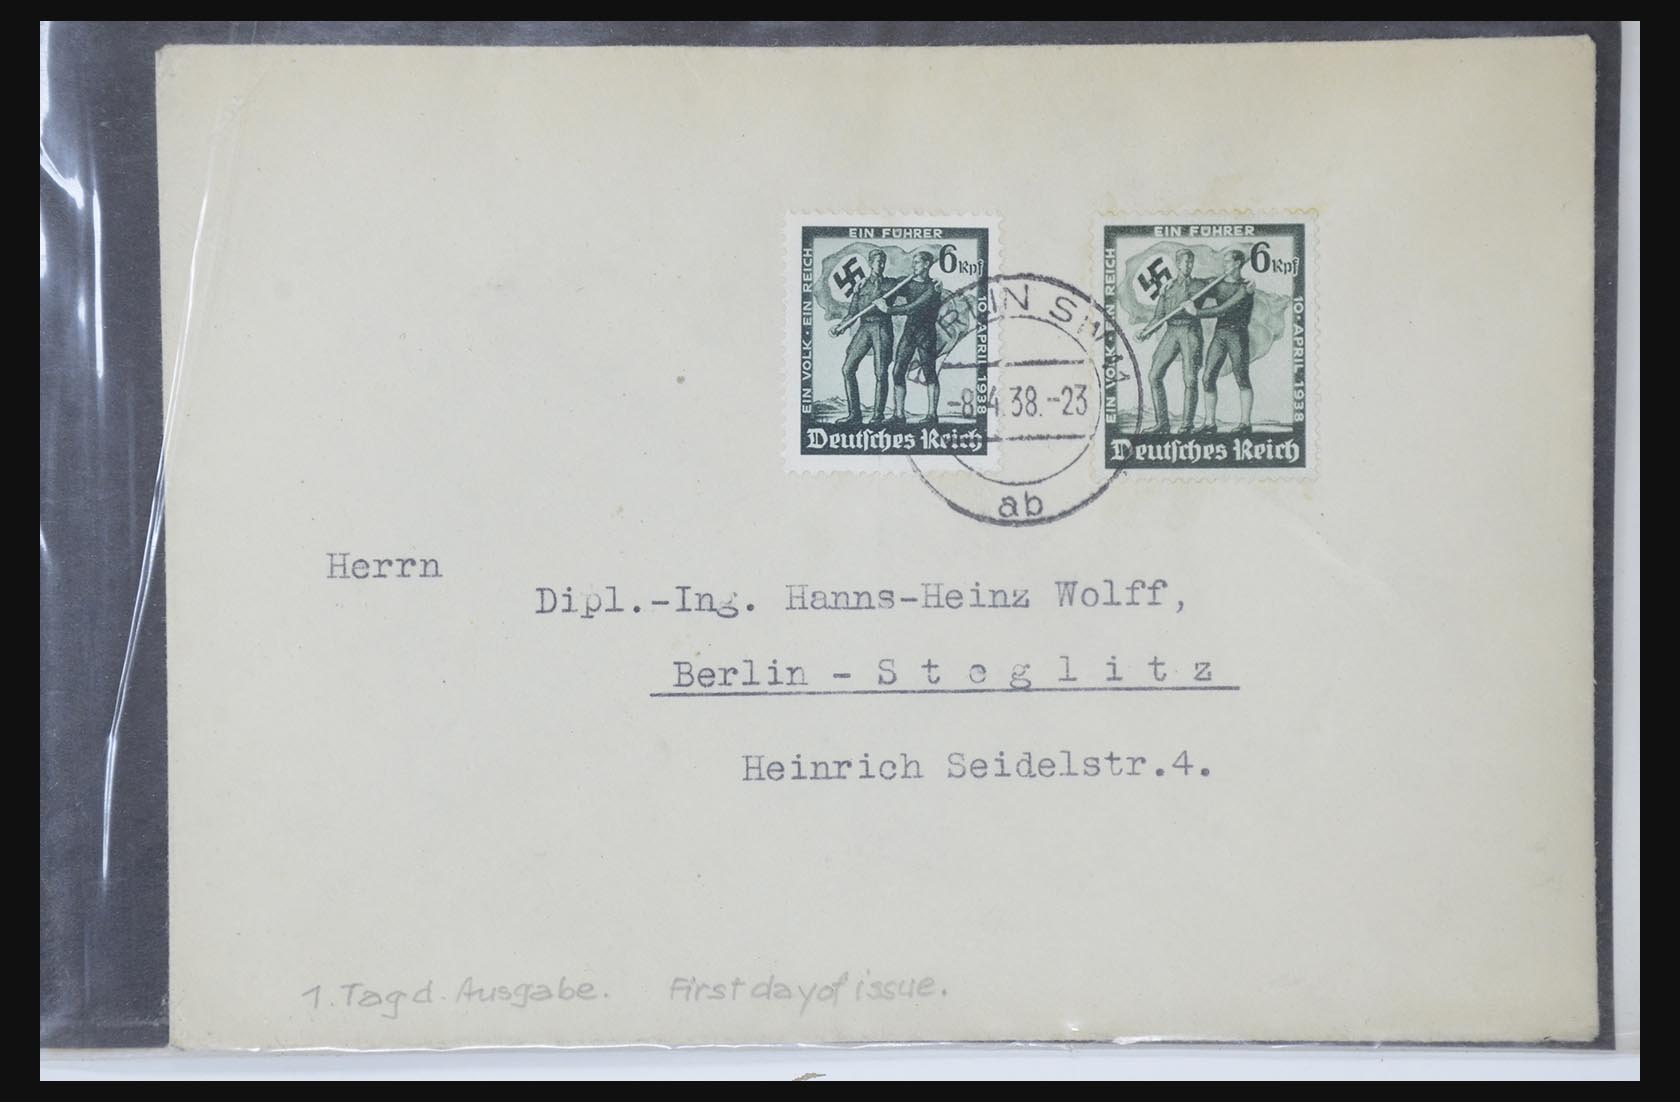 31581 055 - 31581 Duitsland brieven en FDC's 1945-1981.